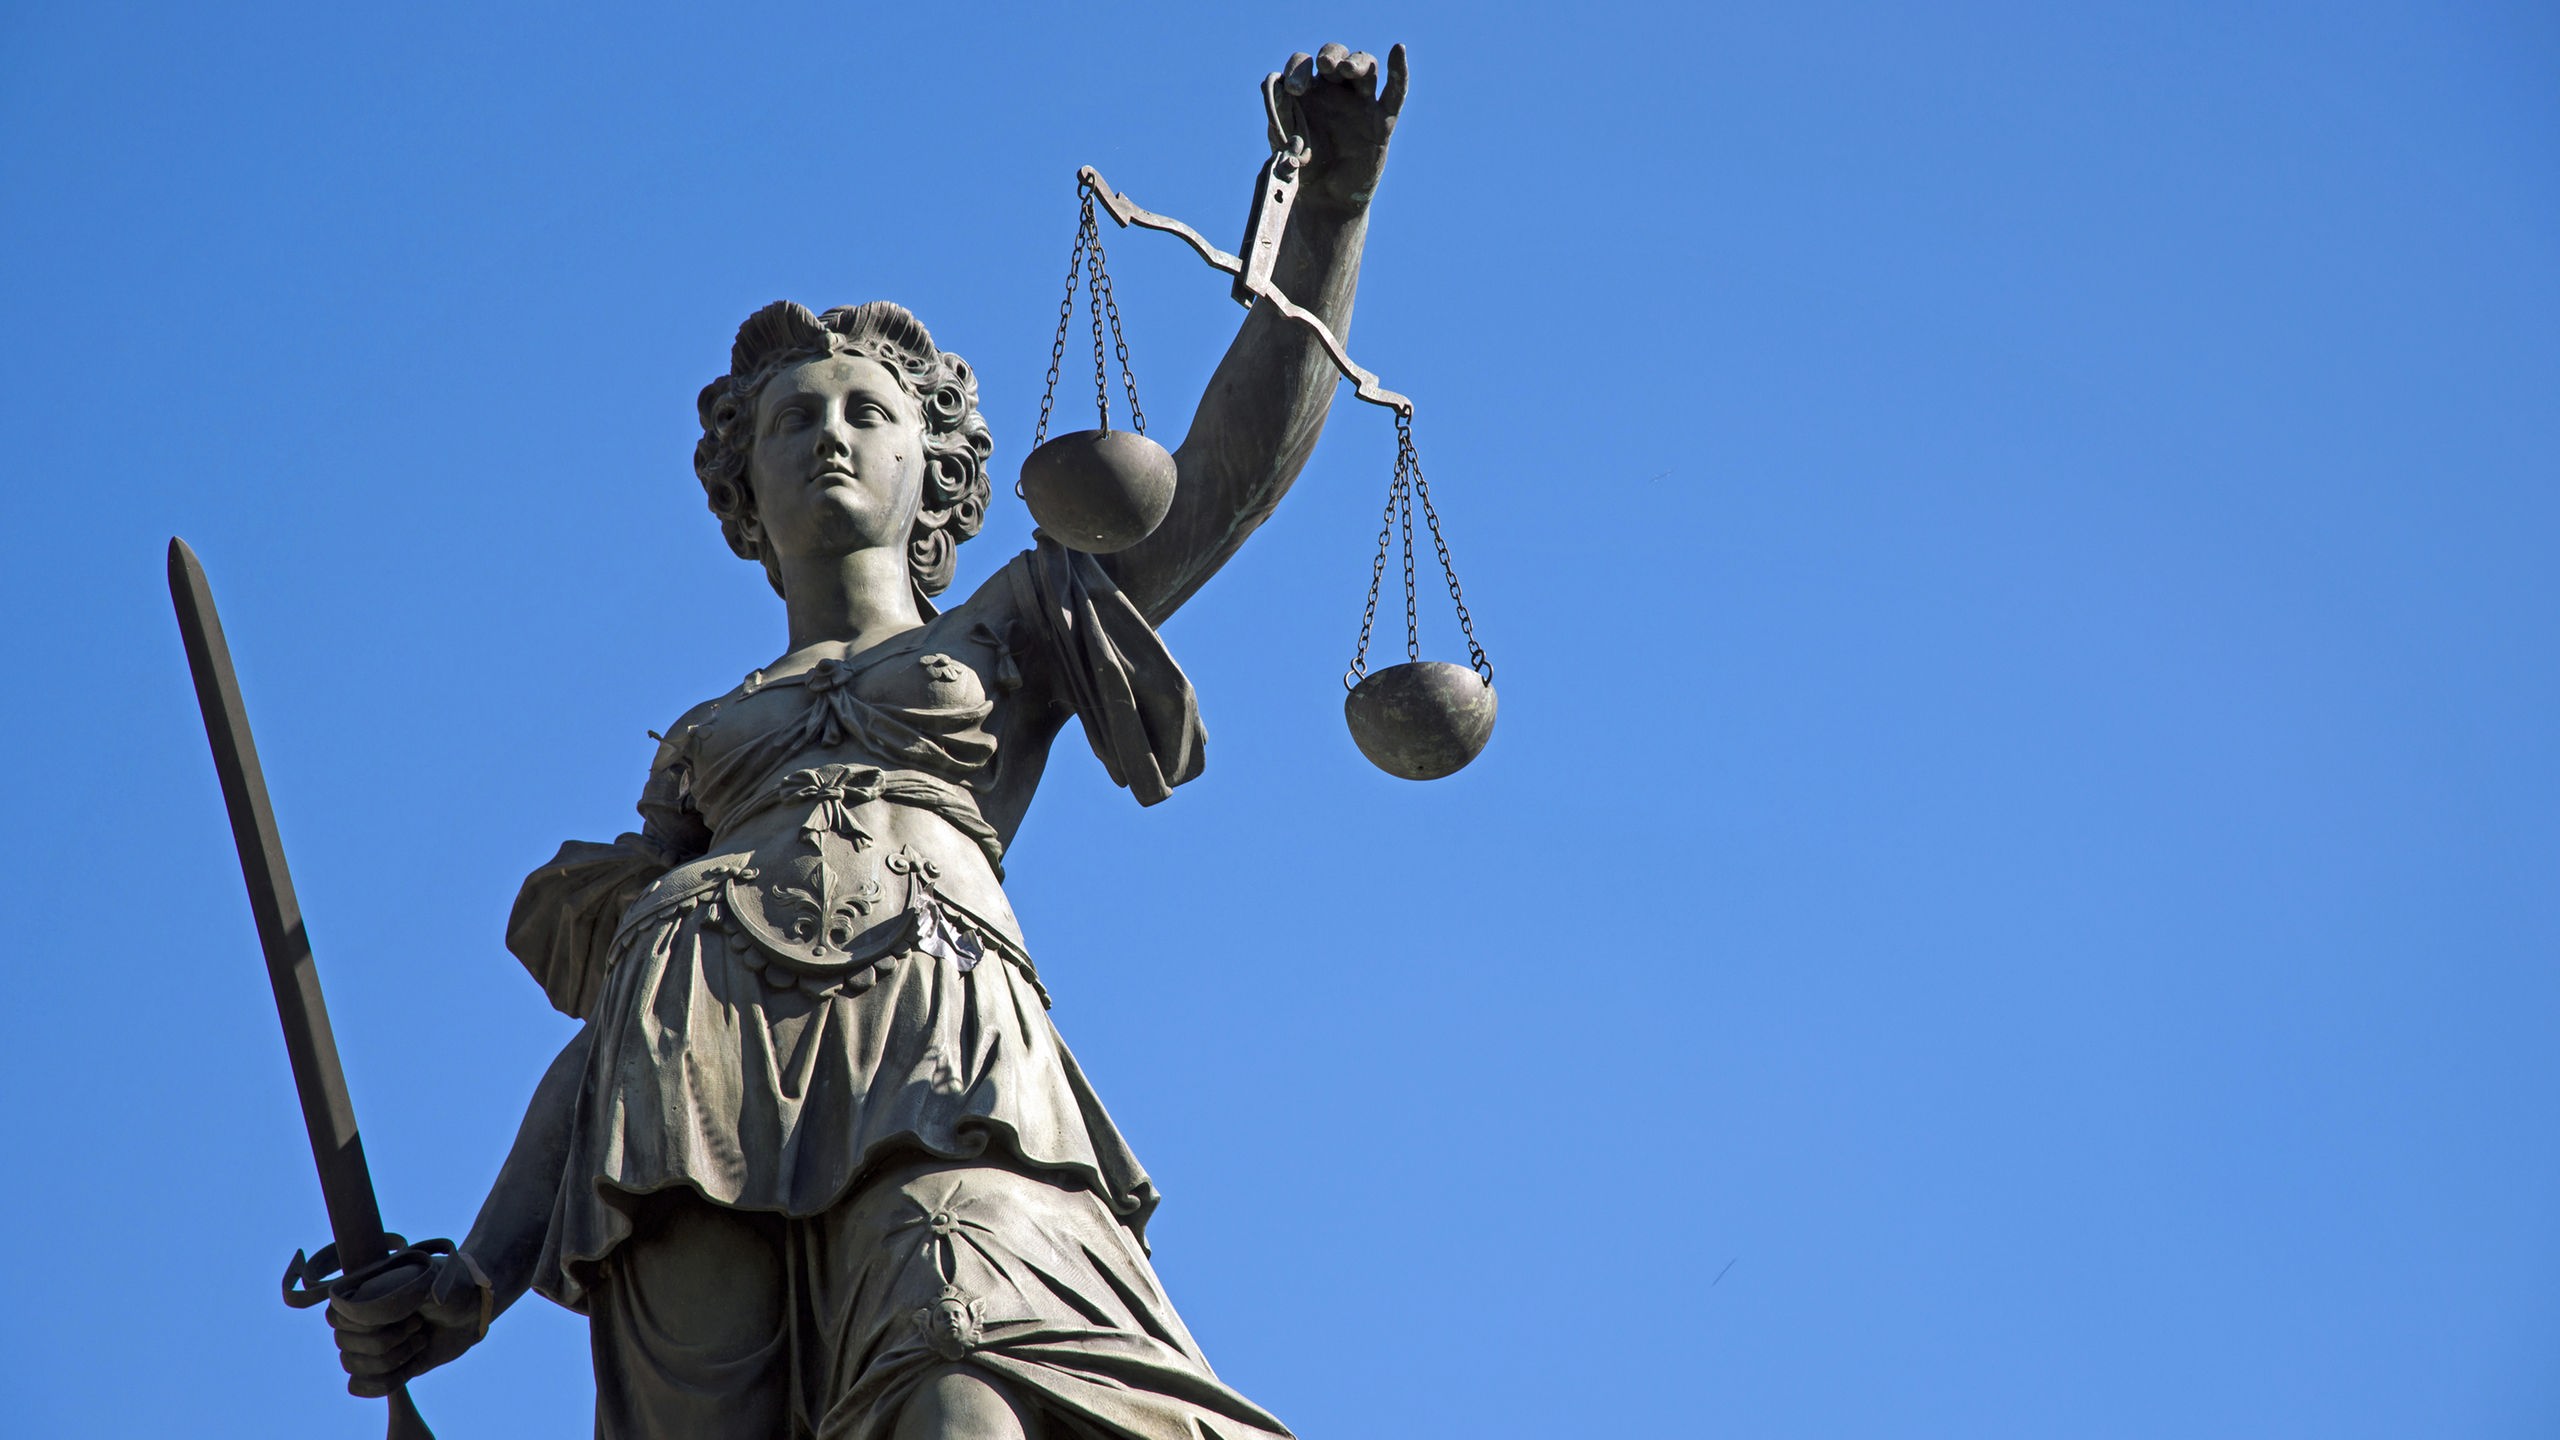 Reichen-Rabatt und diskrete Deals – wie gerecht ist die Justiz?